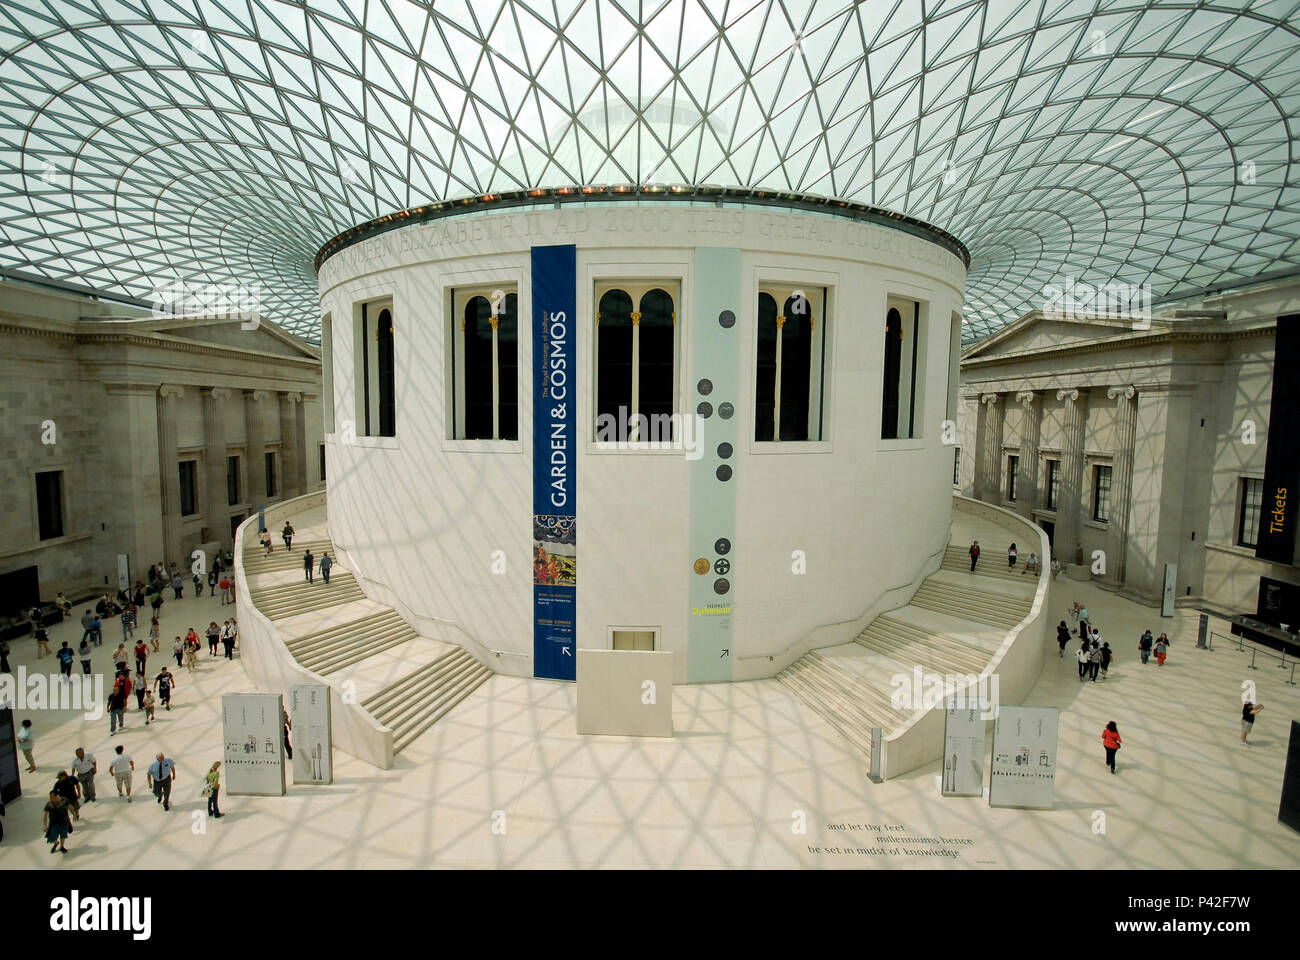 O British Museum (Museu Britânico) fundado em 1753, contém mais de sete milhões de objetos e documentos documentando a história humana até os dias de hoje. Londres/Lo, Reino Unido - 26/06/2009. Foto: André Stefano / Fotoarena Stock Photo